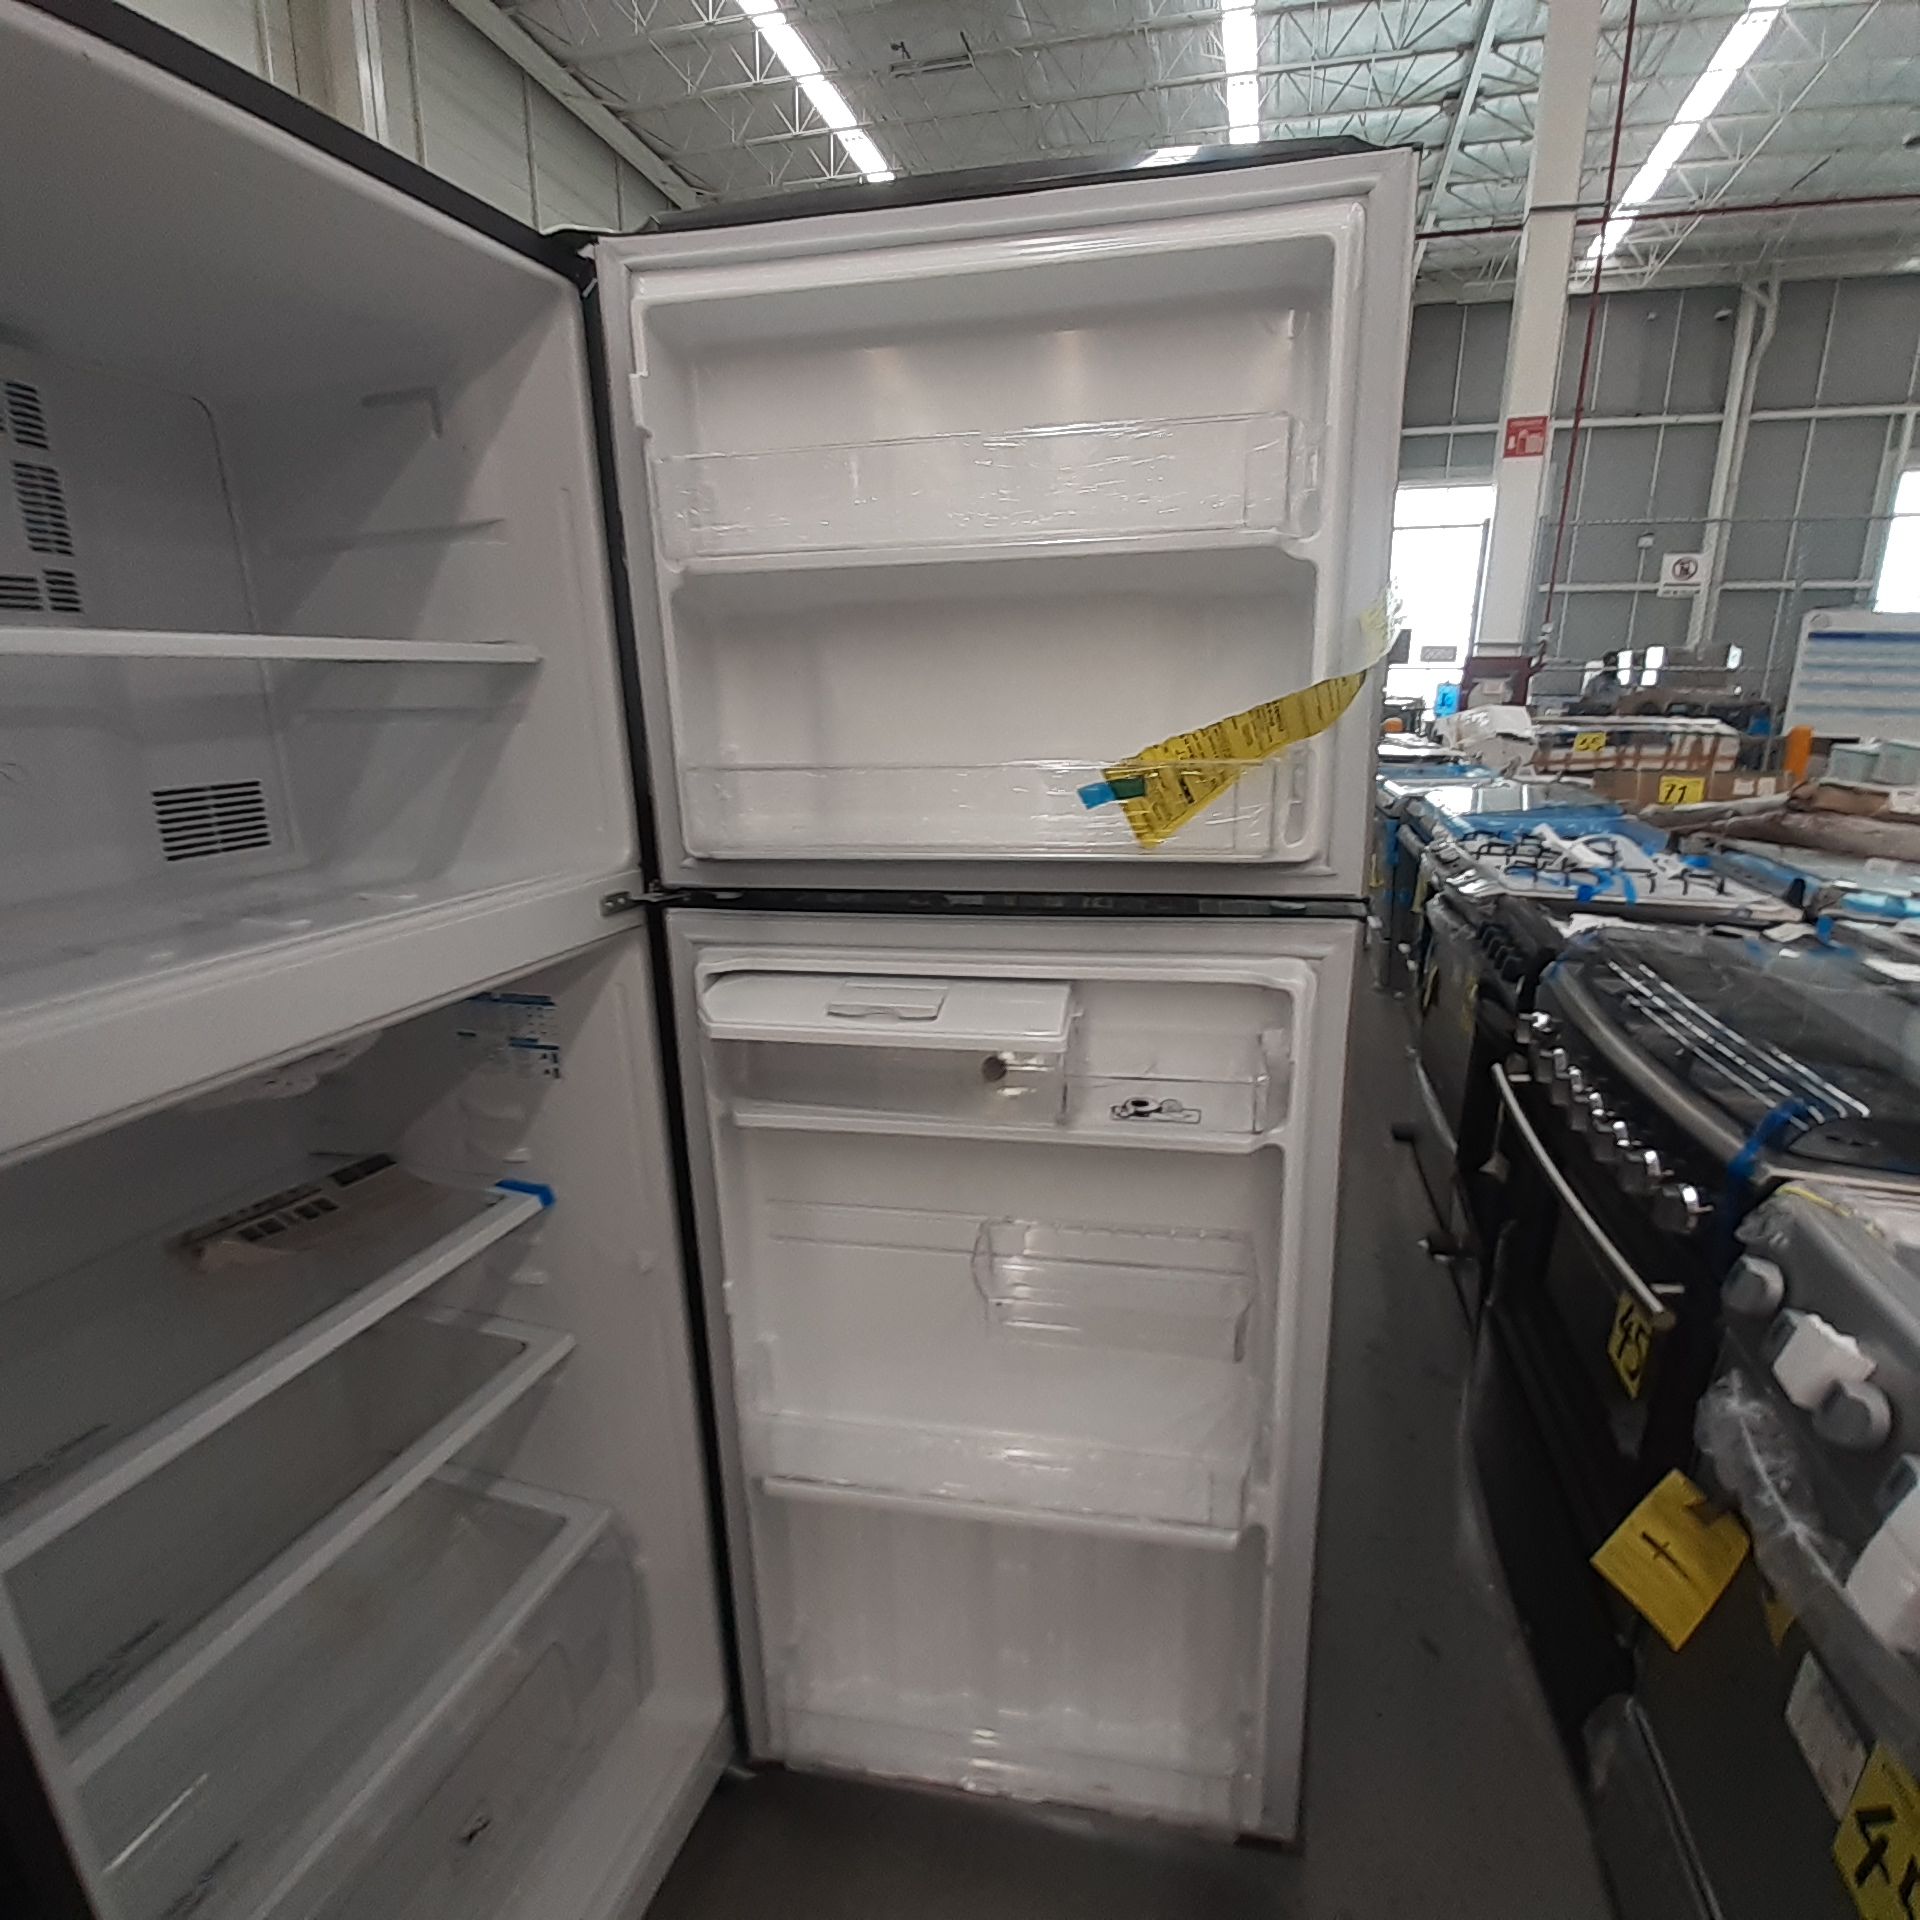 Lote De 3 Refrigeradores: 1 Refrigerador Marca Whirlpool, 1 Refrigerador Marca Mabe, 1 Refrigerador - Image 15 of 22